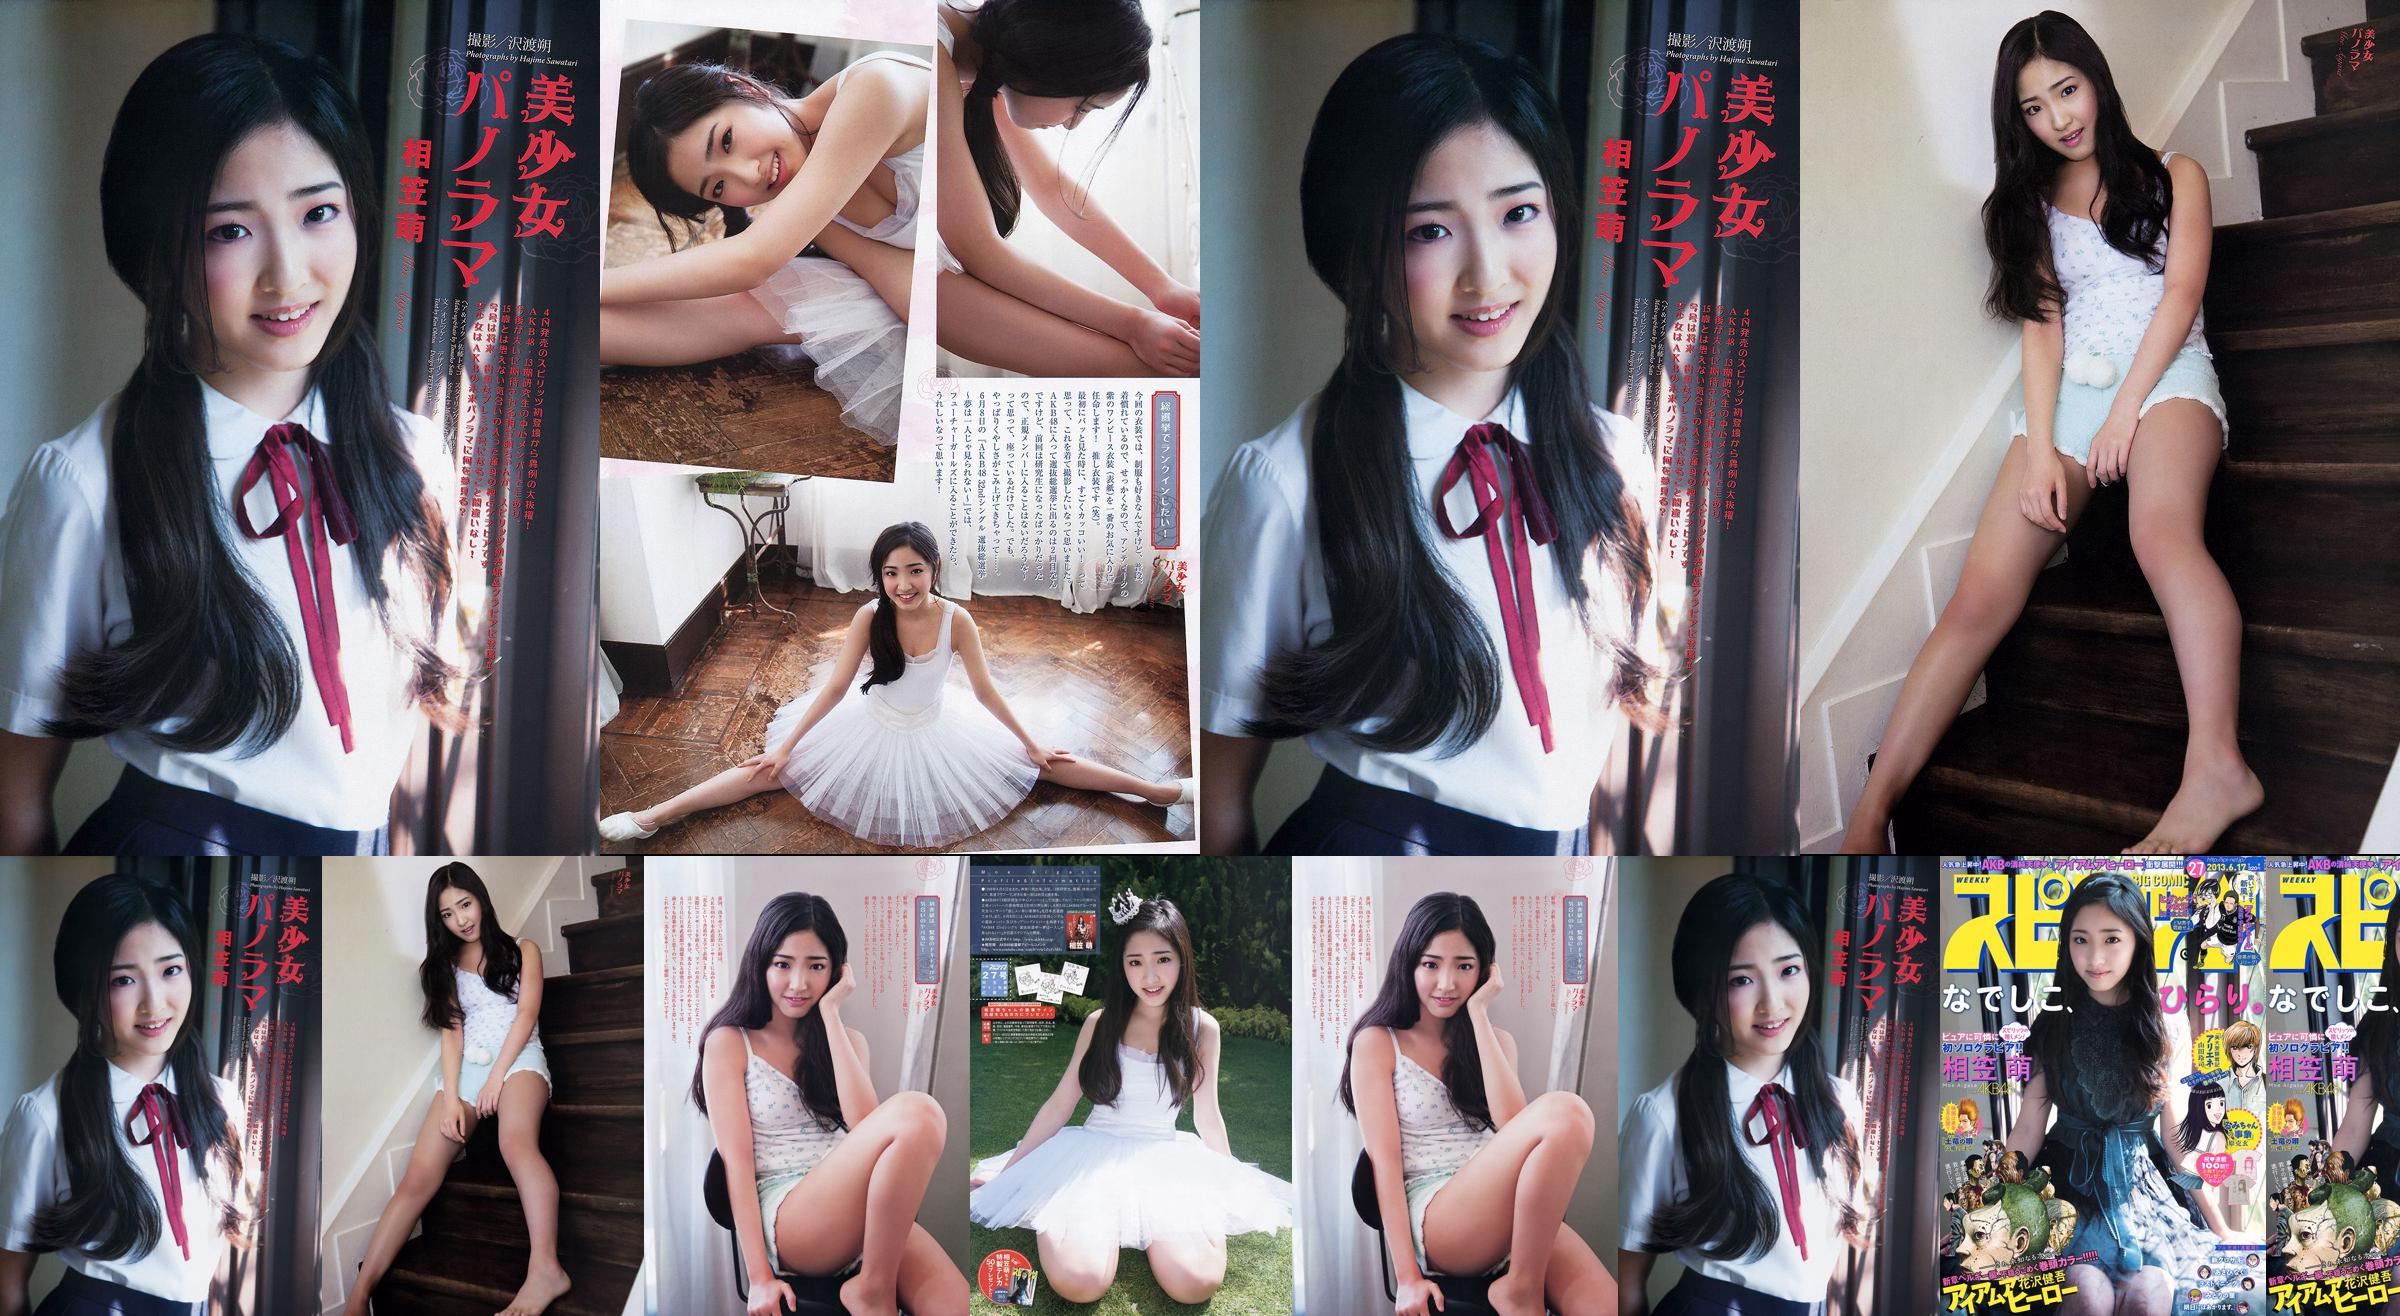 [Weekly Big Comic Spirits] Aikasa Moe 2013 No.27 Photo Magazine No.8fd15d Pagina 1